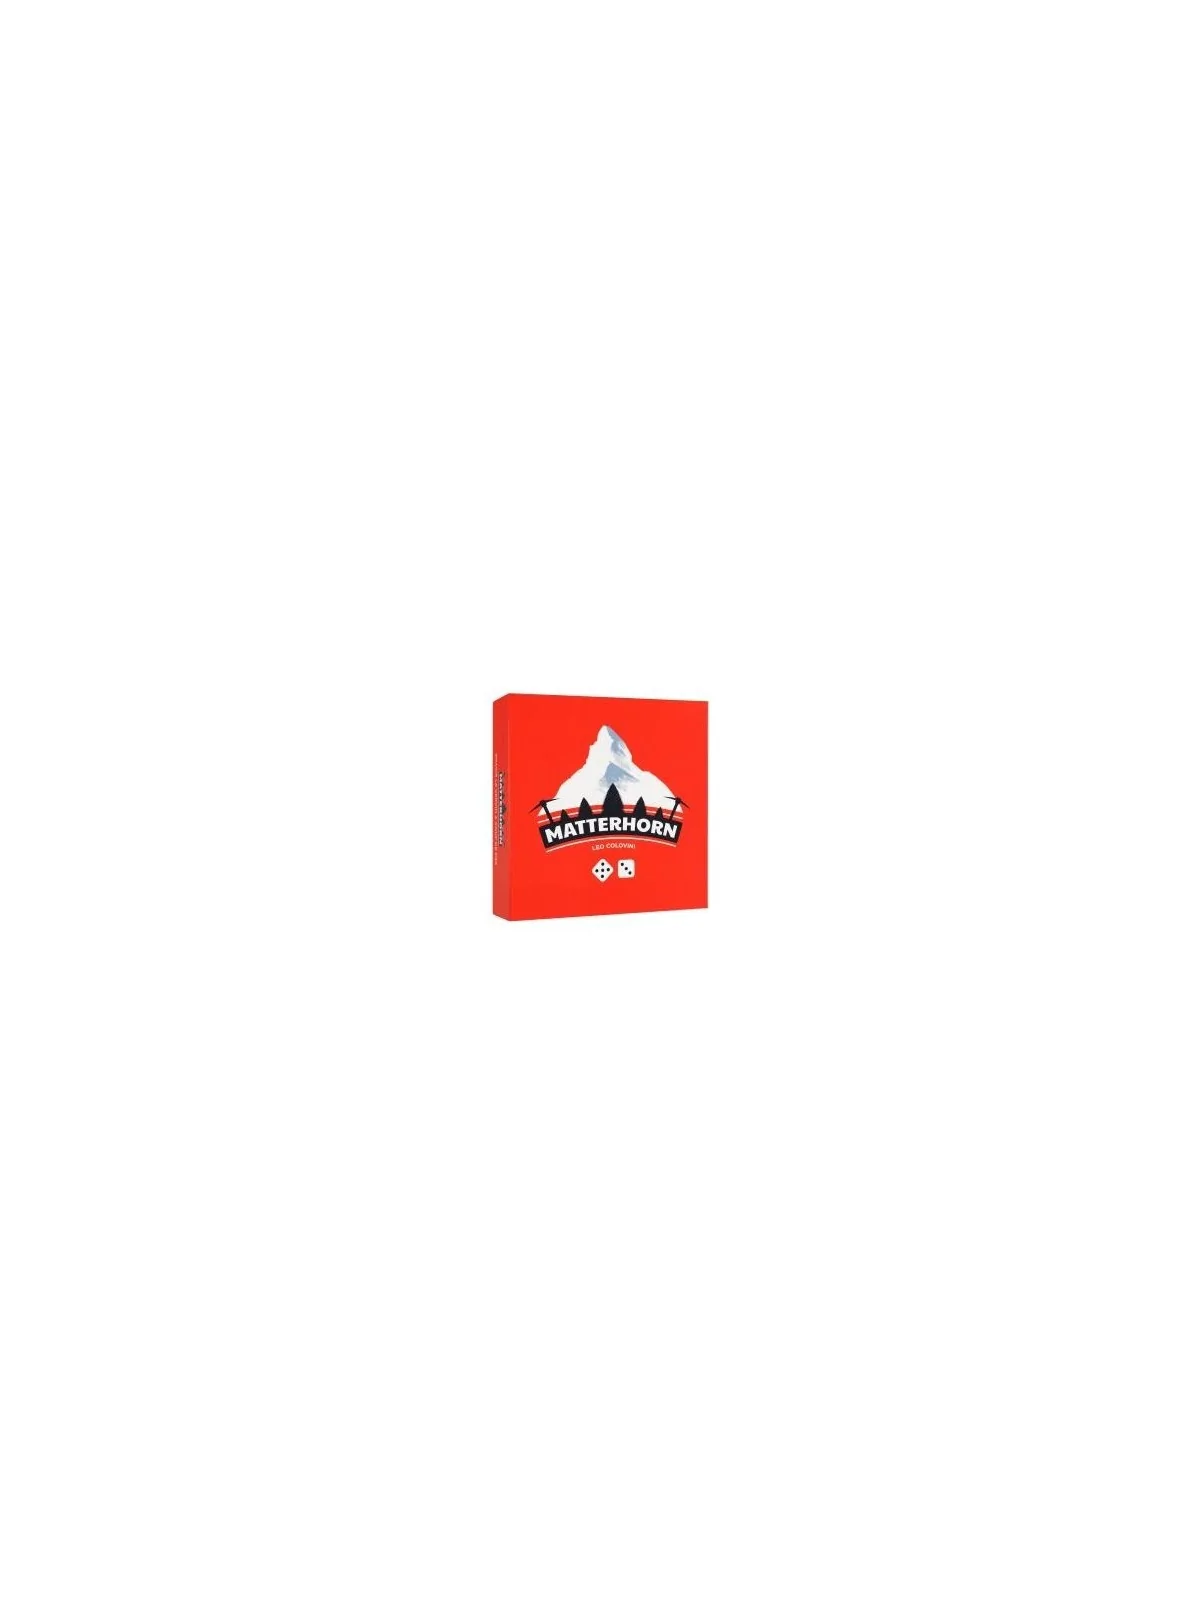 Comprar Matterhorn barato al mejor precio 22,46 € de Gen X Games